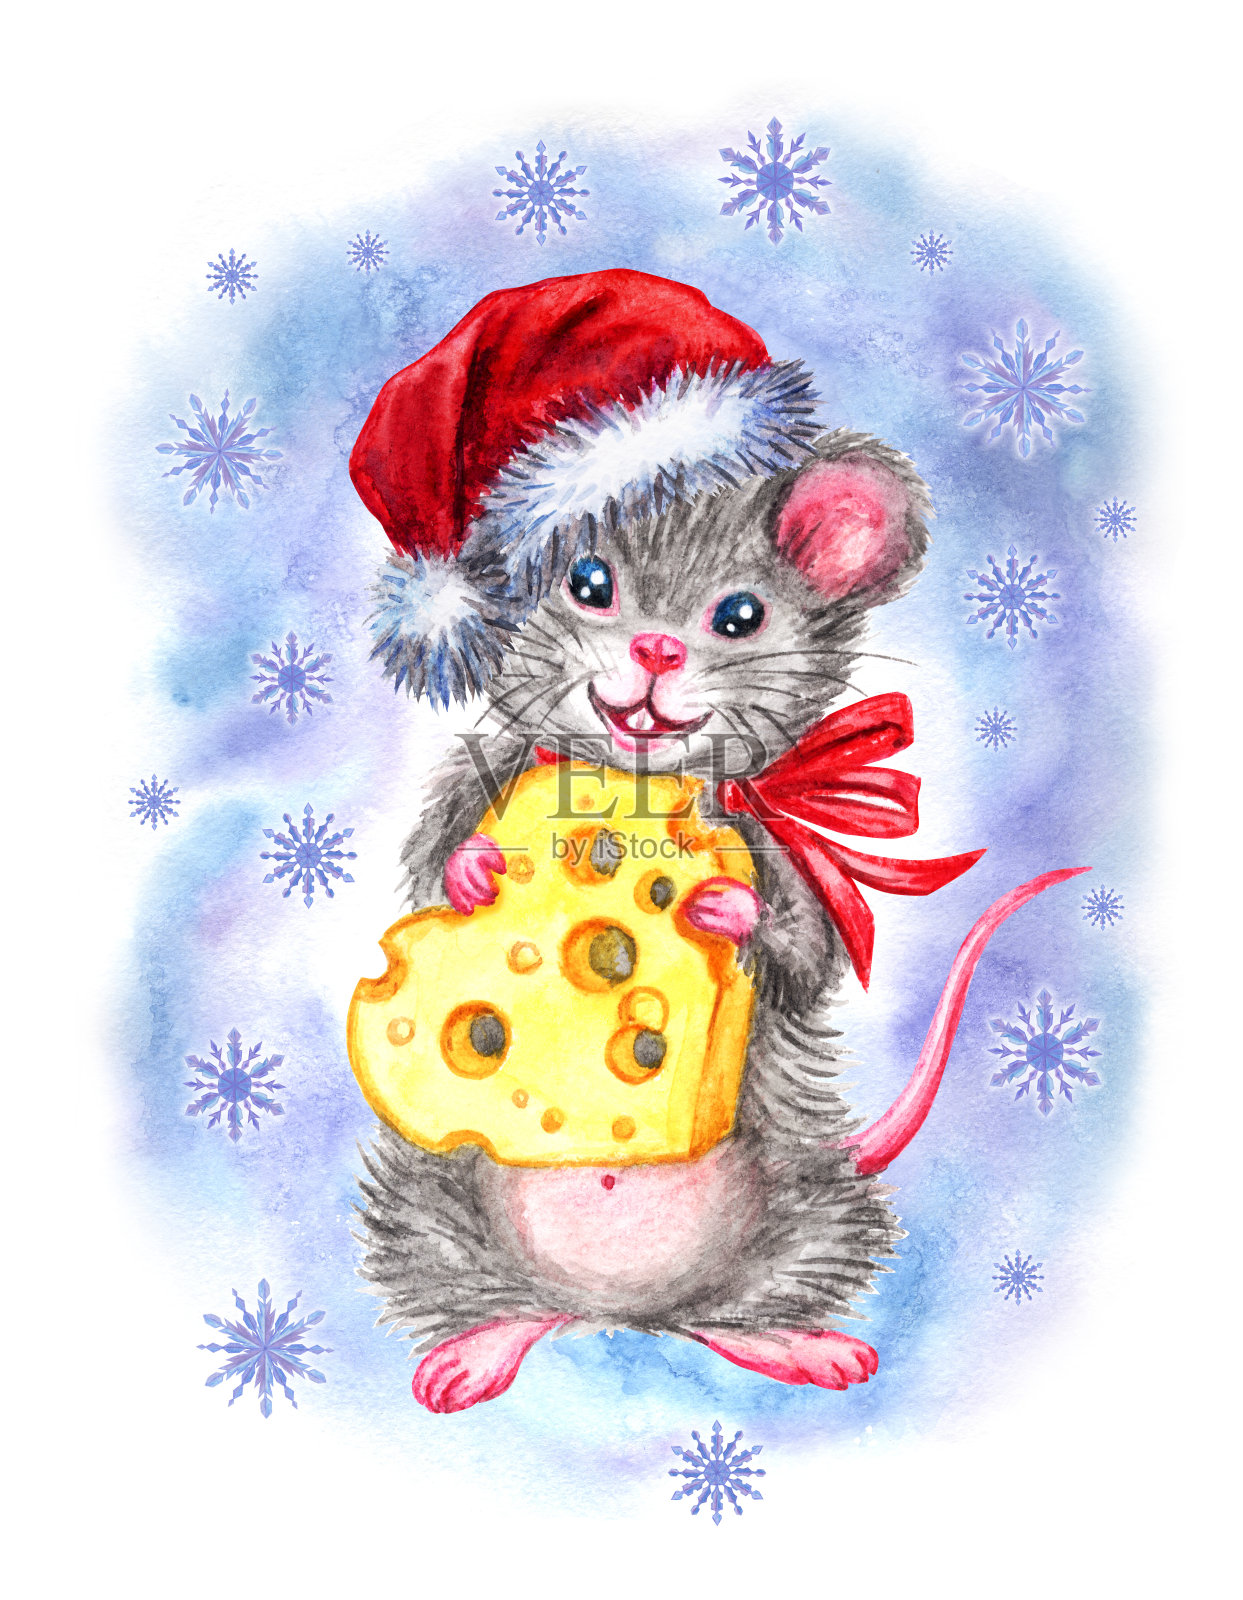 戴着心形奶酪圣诞帽的老鼠设计模板素材